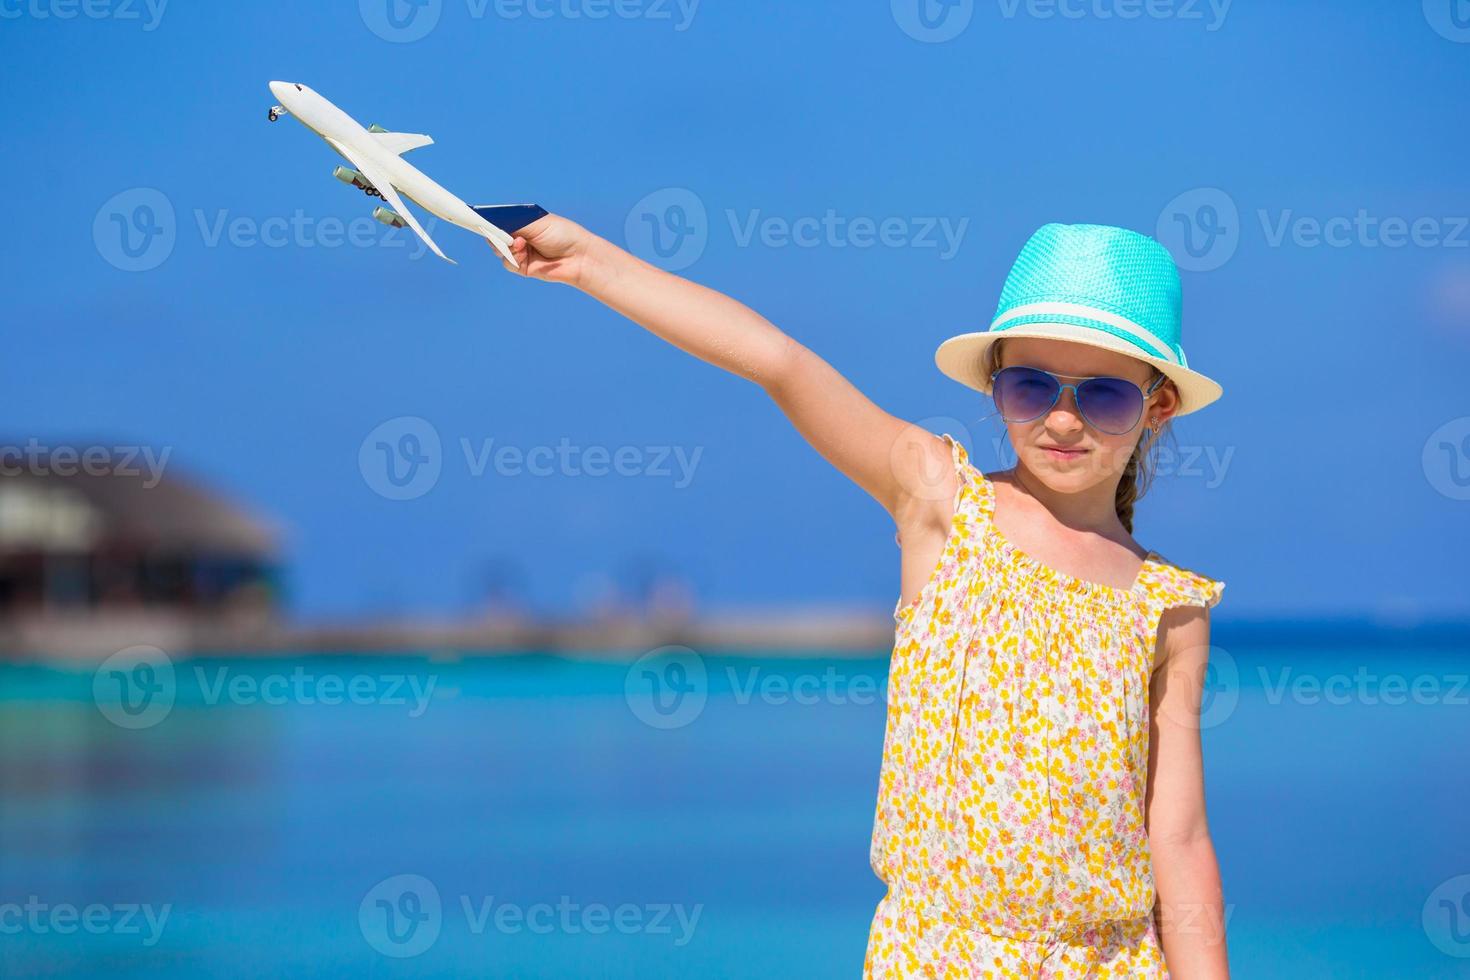 menina feliz com avião de brinquedo nas mãos na praia de areia branca foto